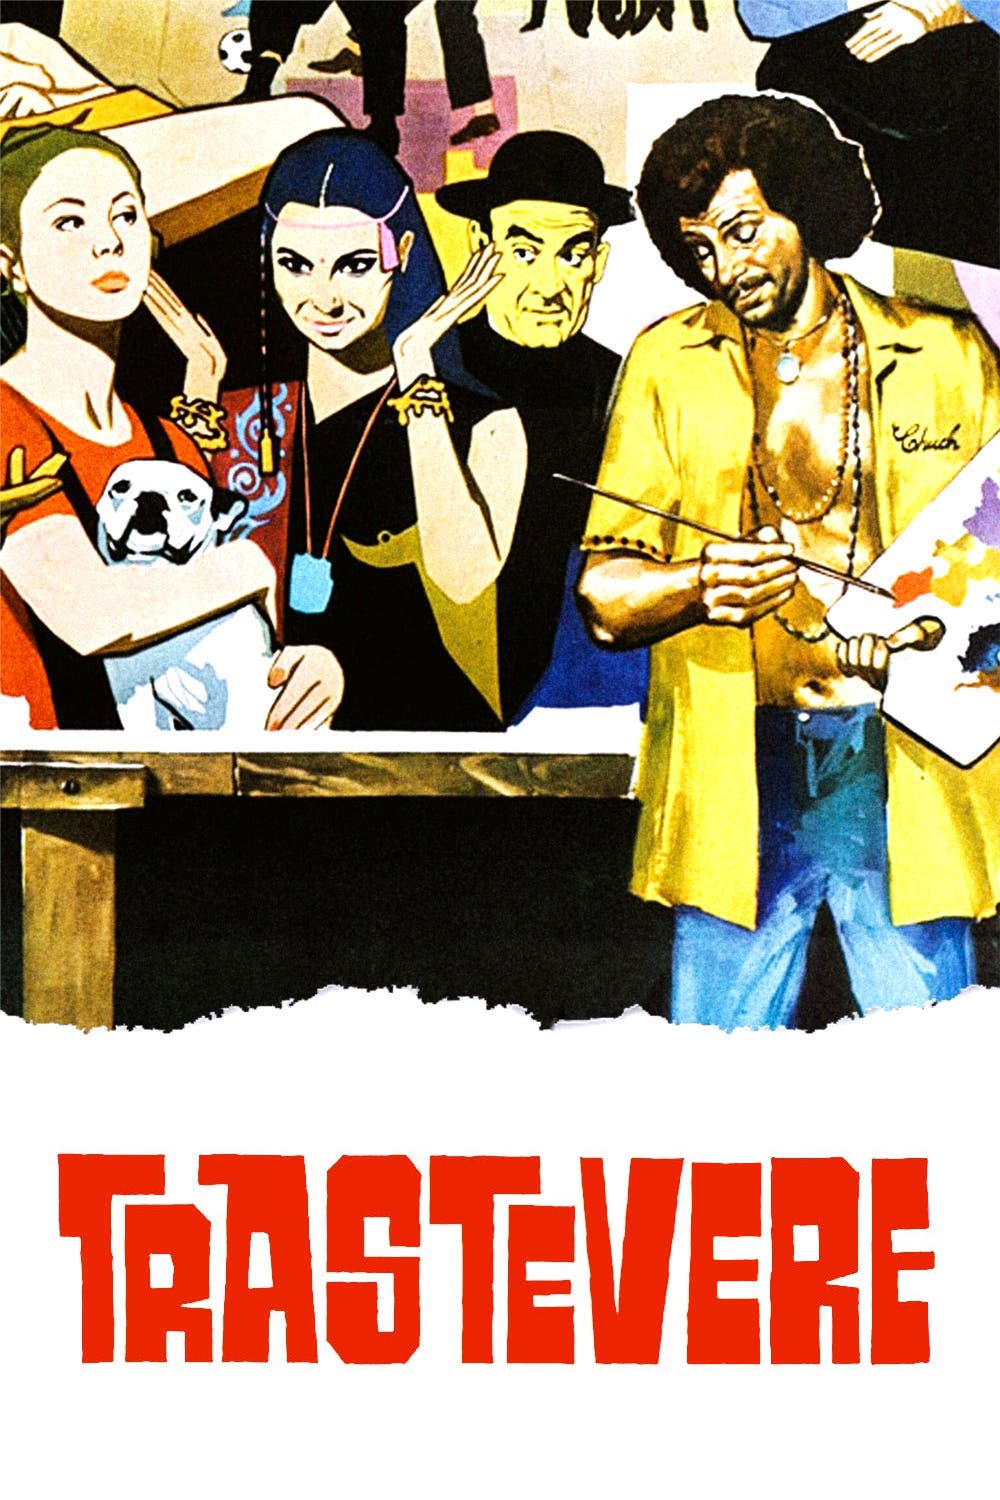 Trastevere (1971)